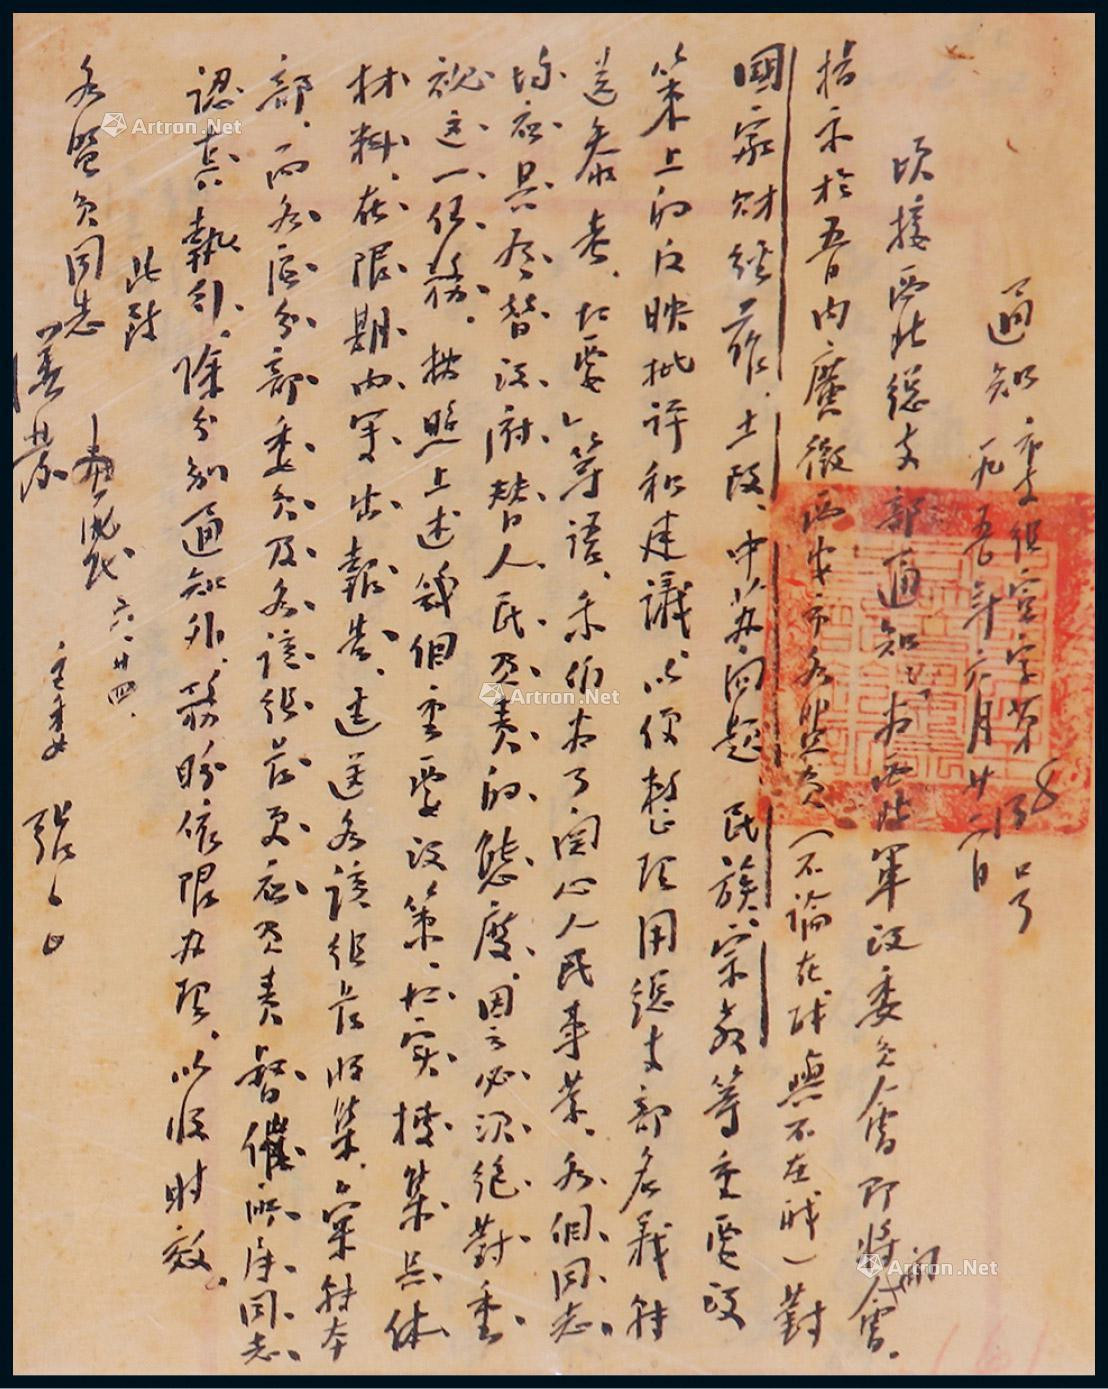 Letter by Zhang Zhizhong